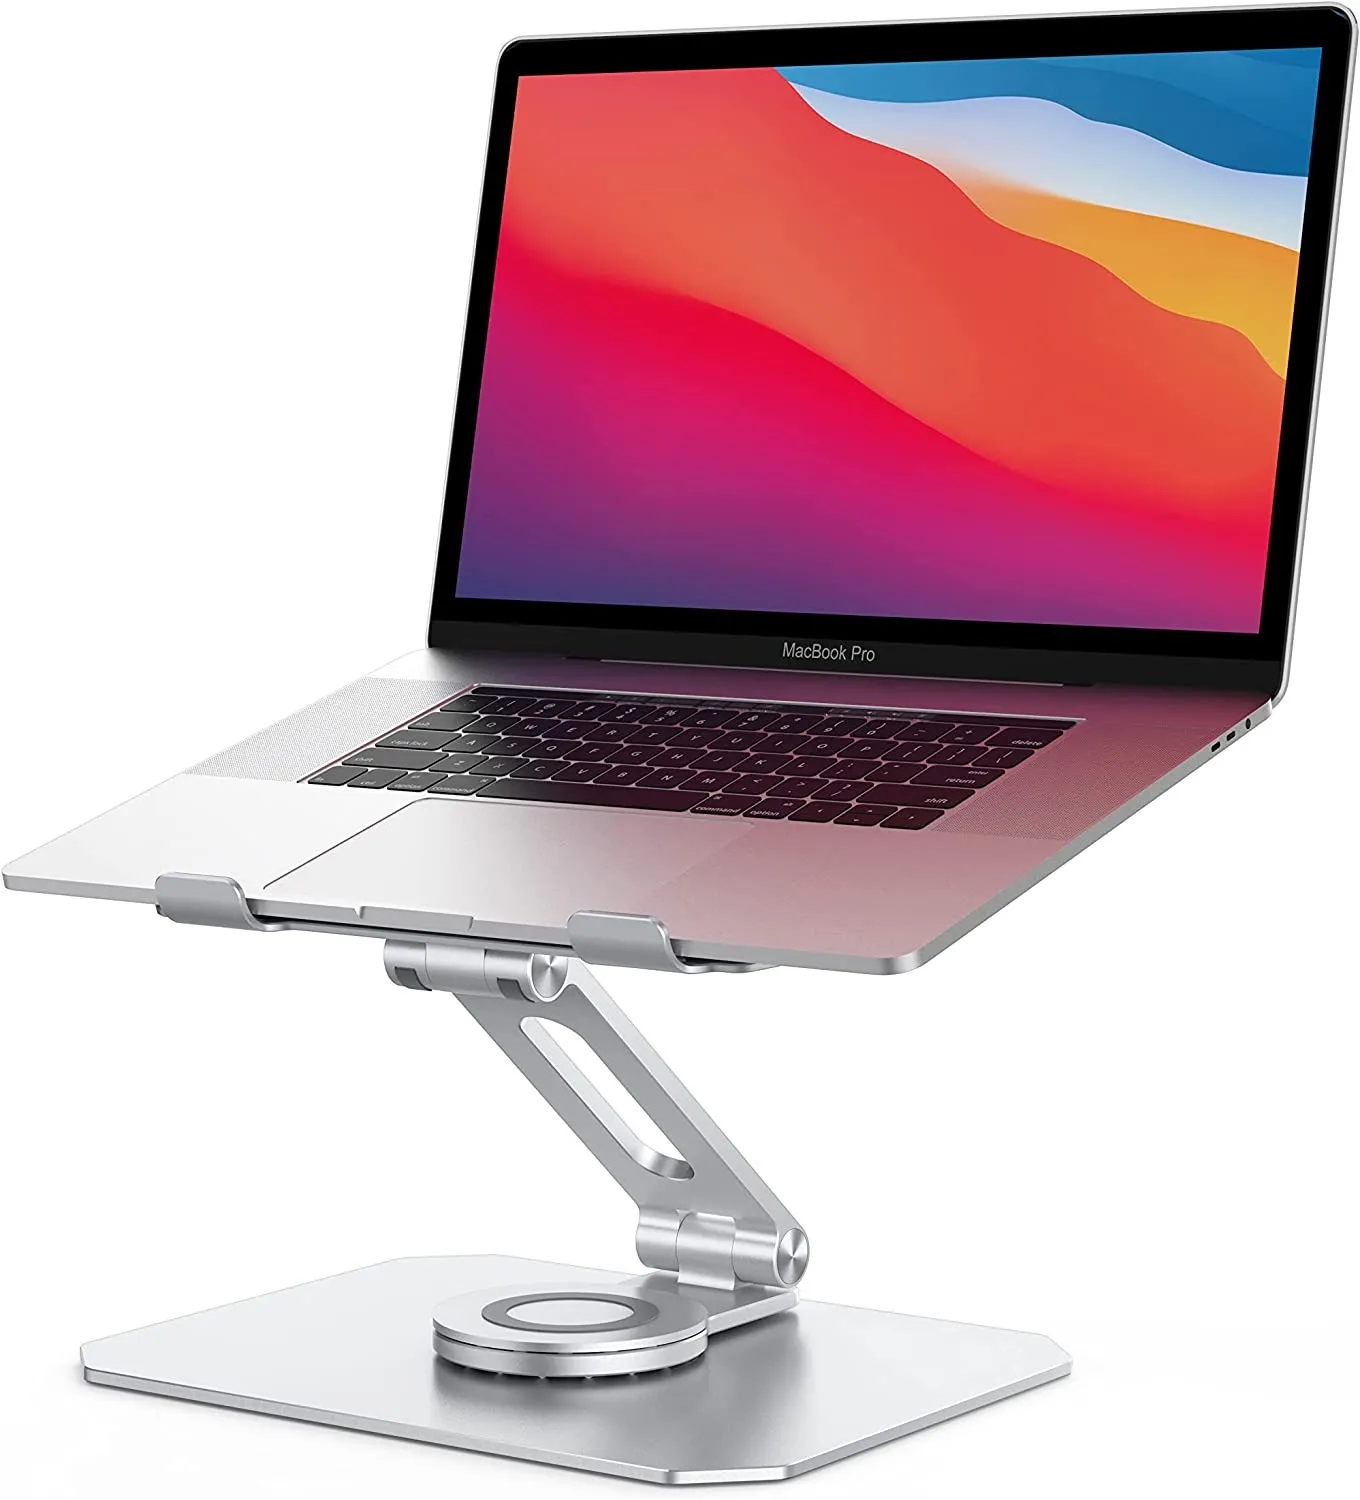 Döner laptop standı, dizüstü bilgisayar masası yükseltici-[360 rotasyon] Çok açılı yükseklik ayarlanabilir alüminyum bilgisayar standı, MacBook Pro Hava (Gümüş) ile uyumlu